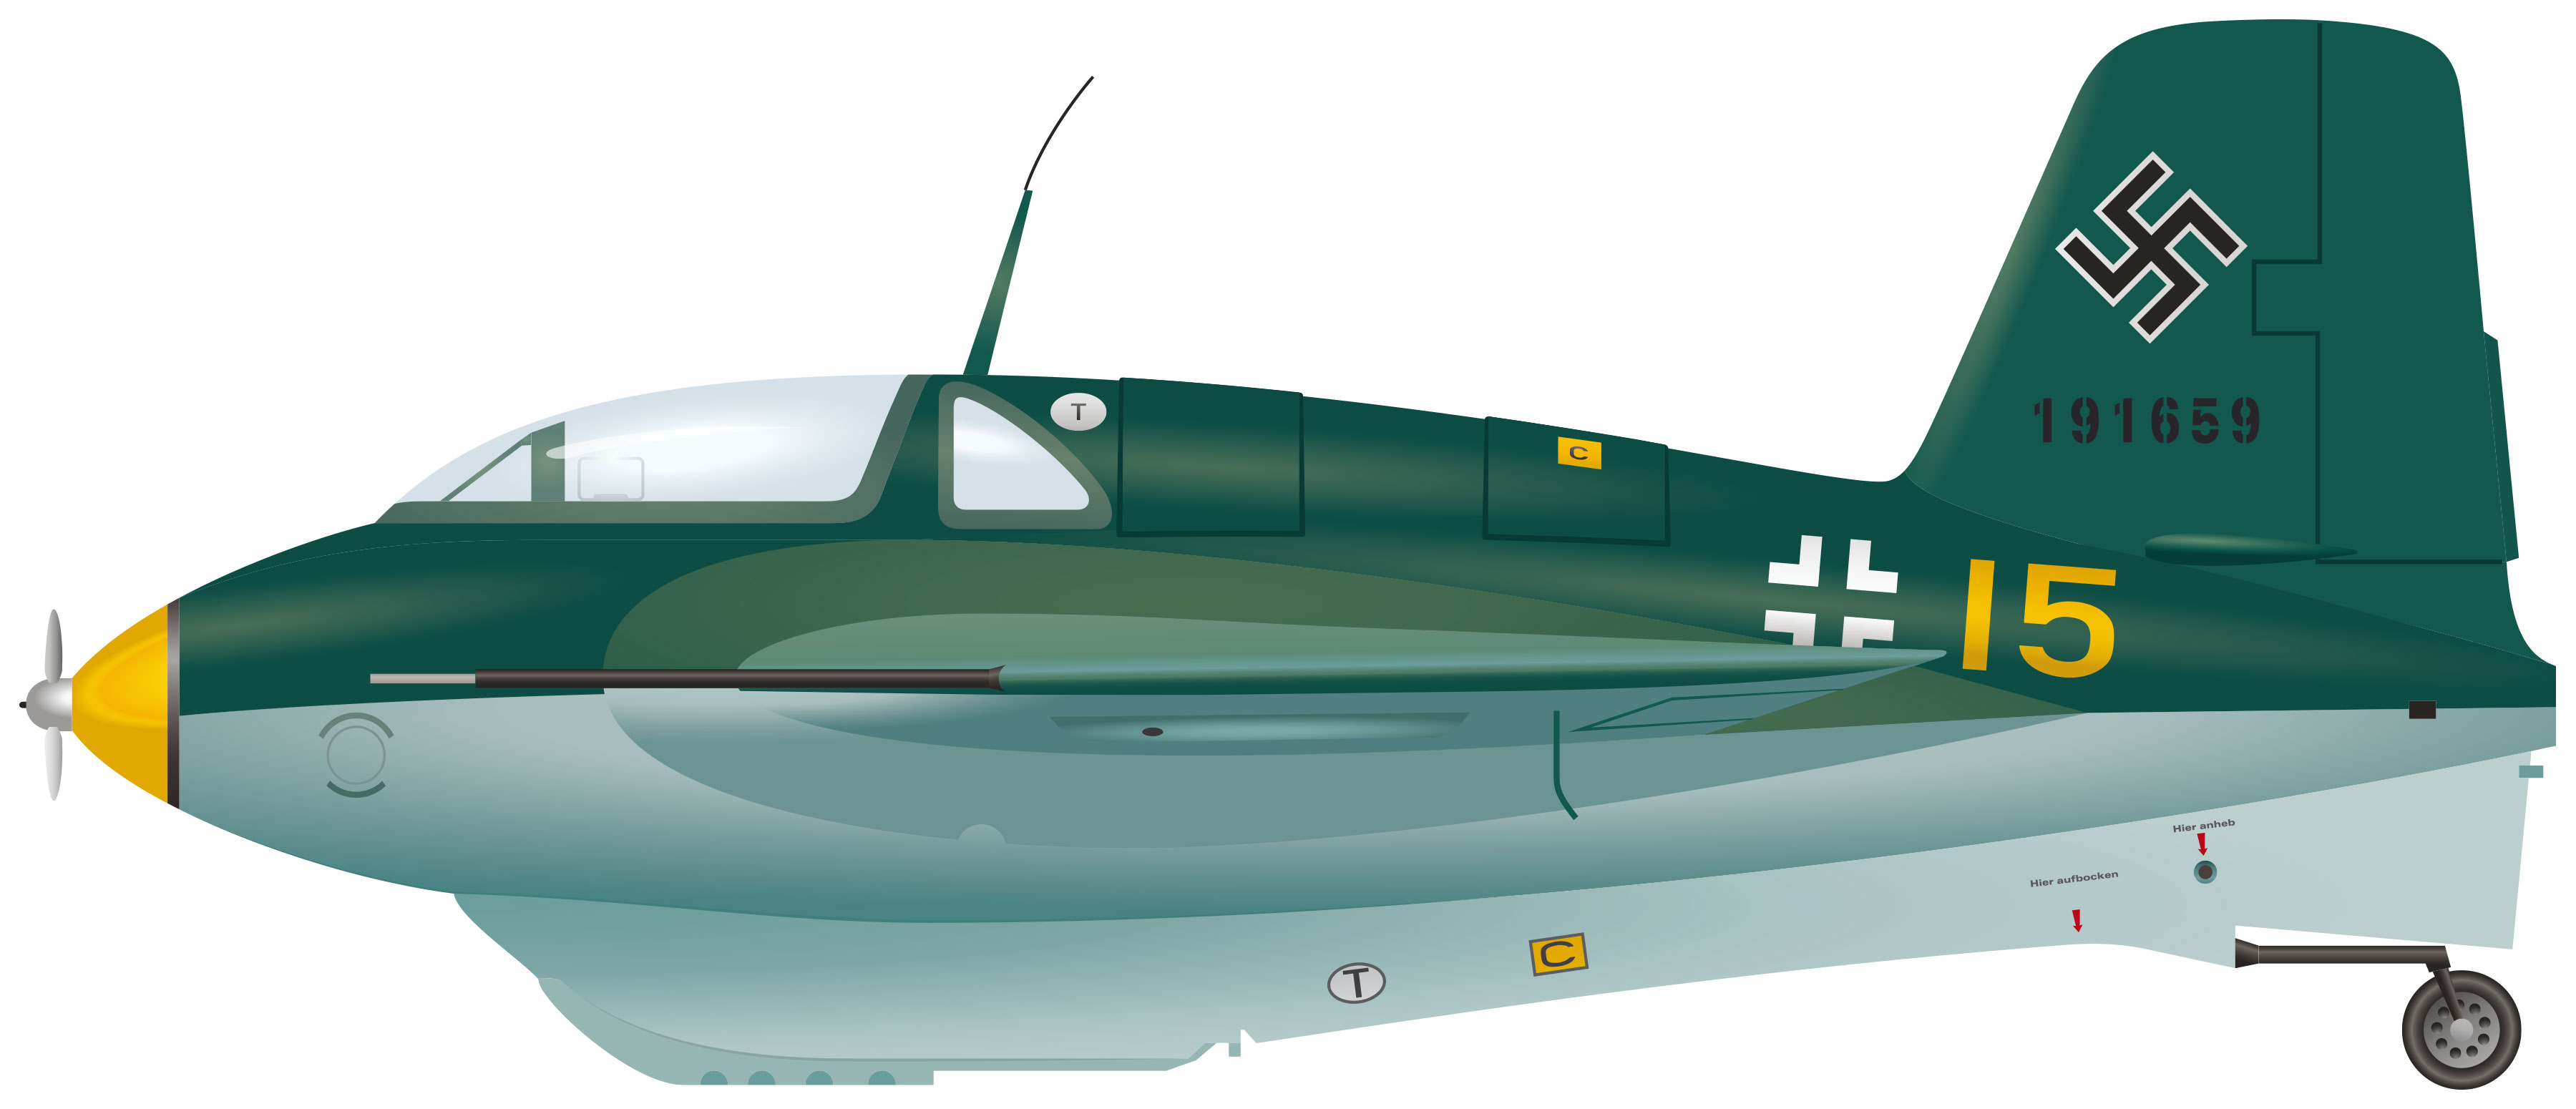 Illustration of the Messerschmitt Komet